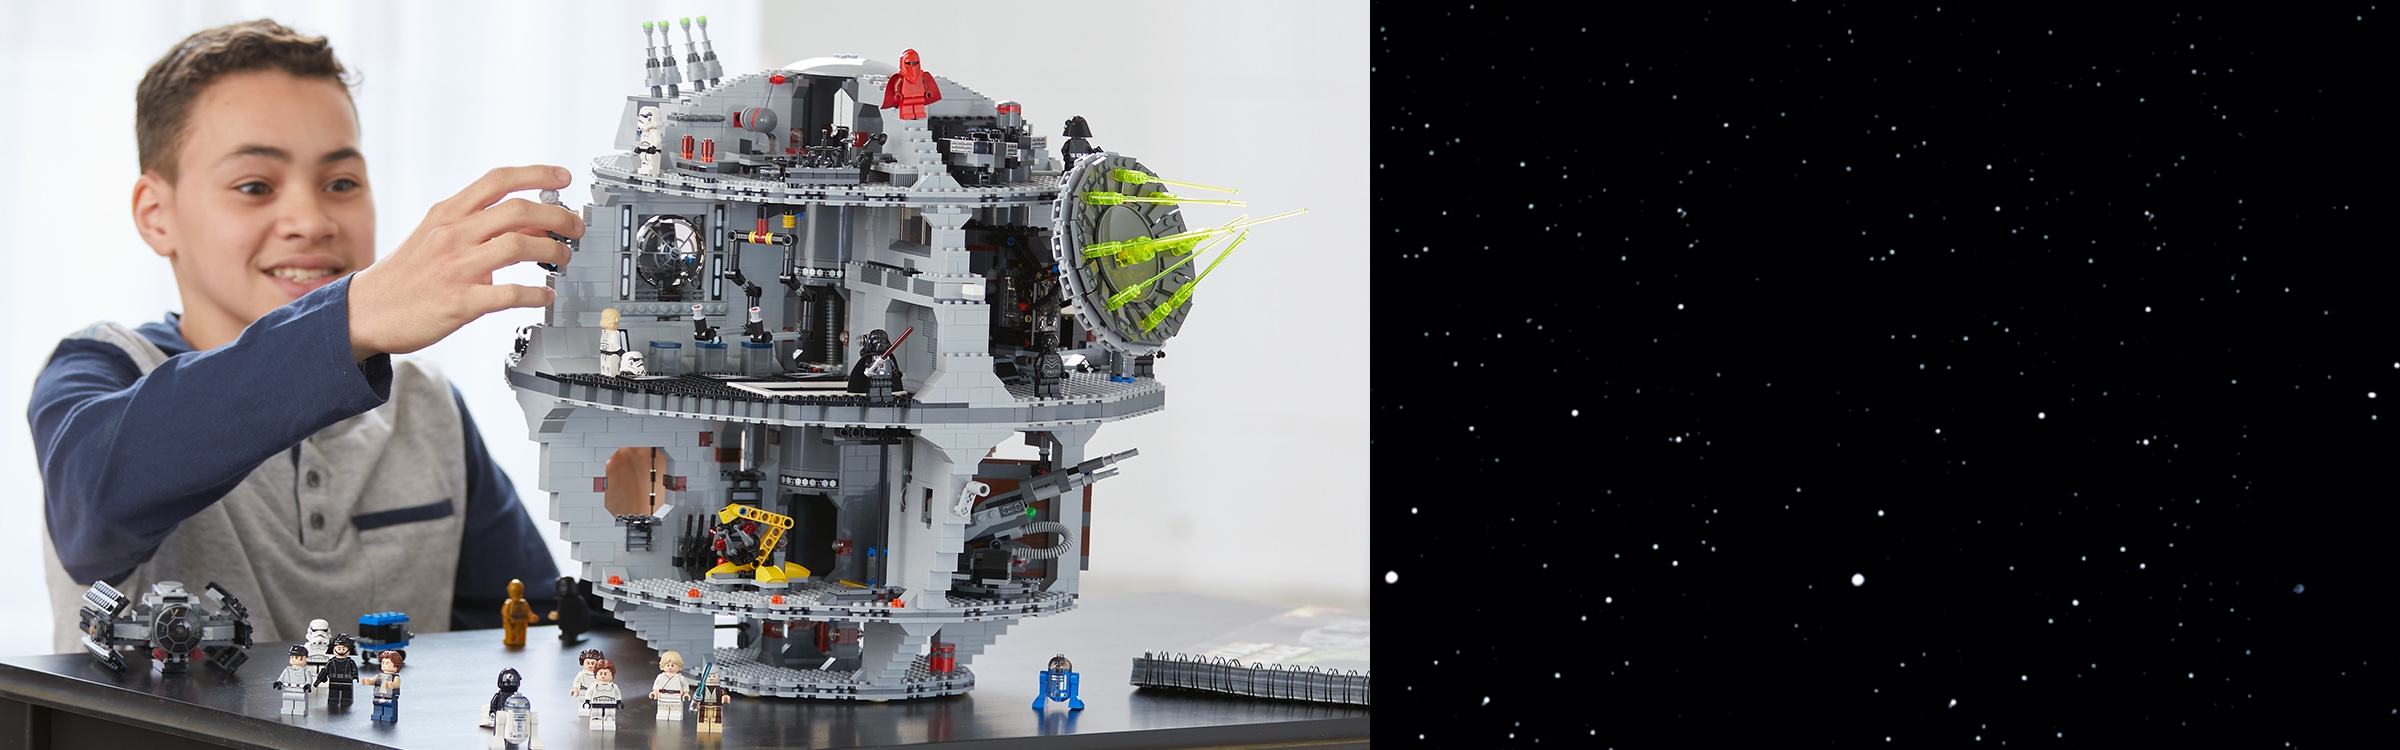 LEGO Star Wars minifigura IMPERIAL Droide astromeccanico DROID MORTE NERA 75159 ** NUOVO ** 